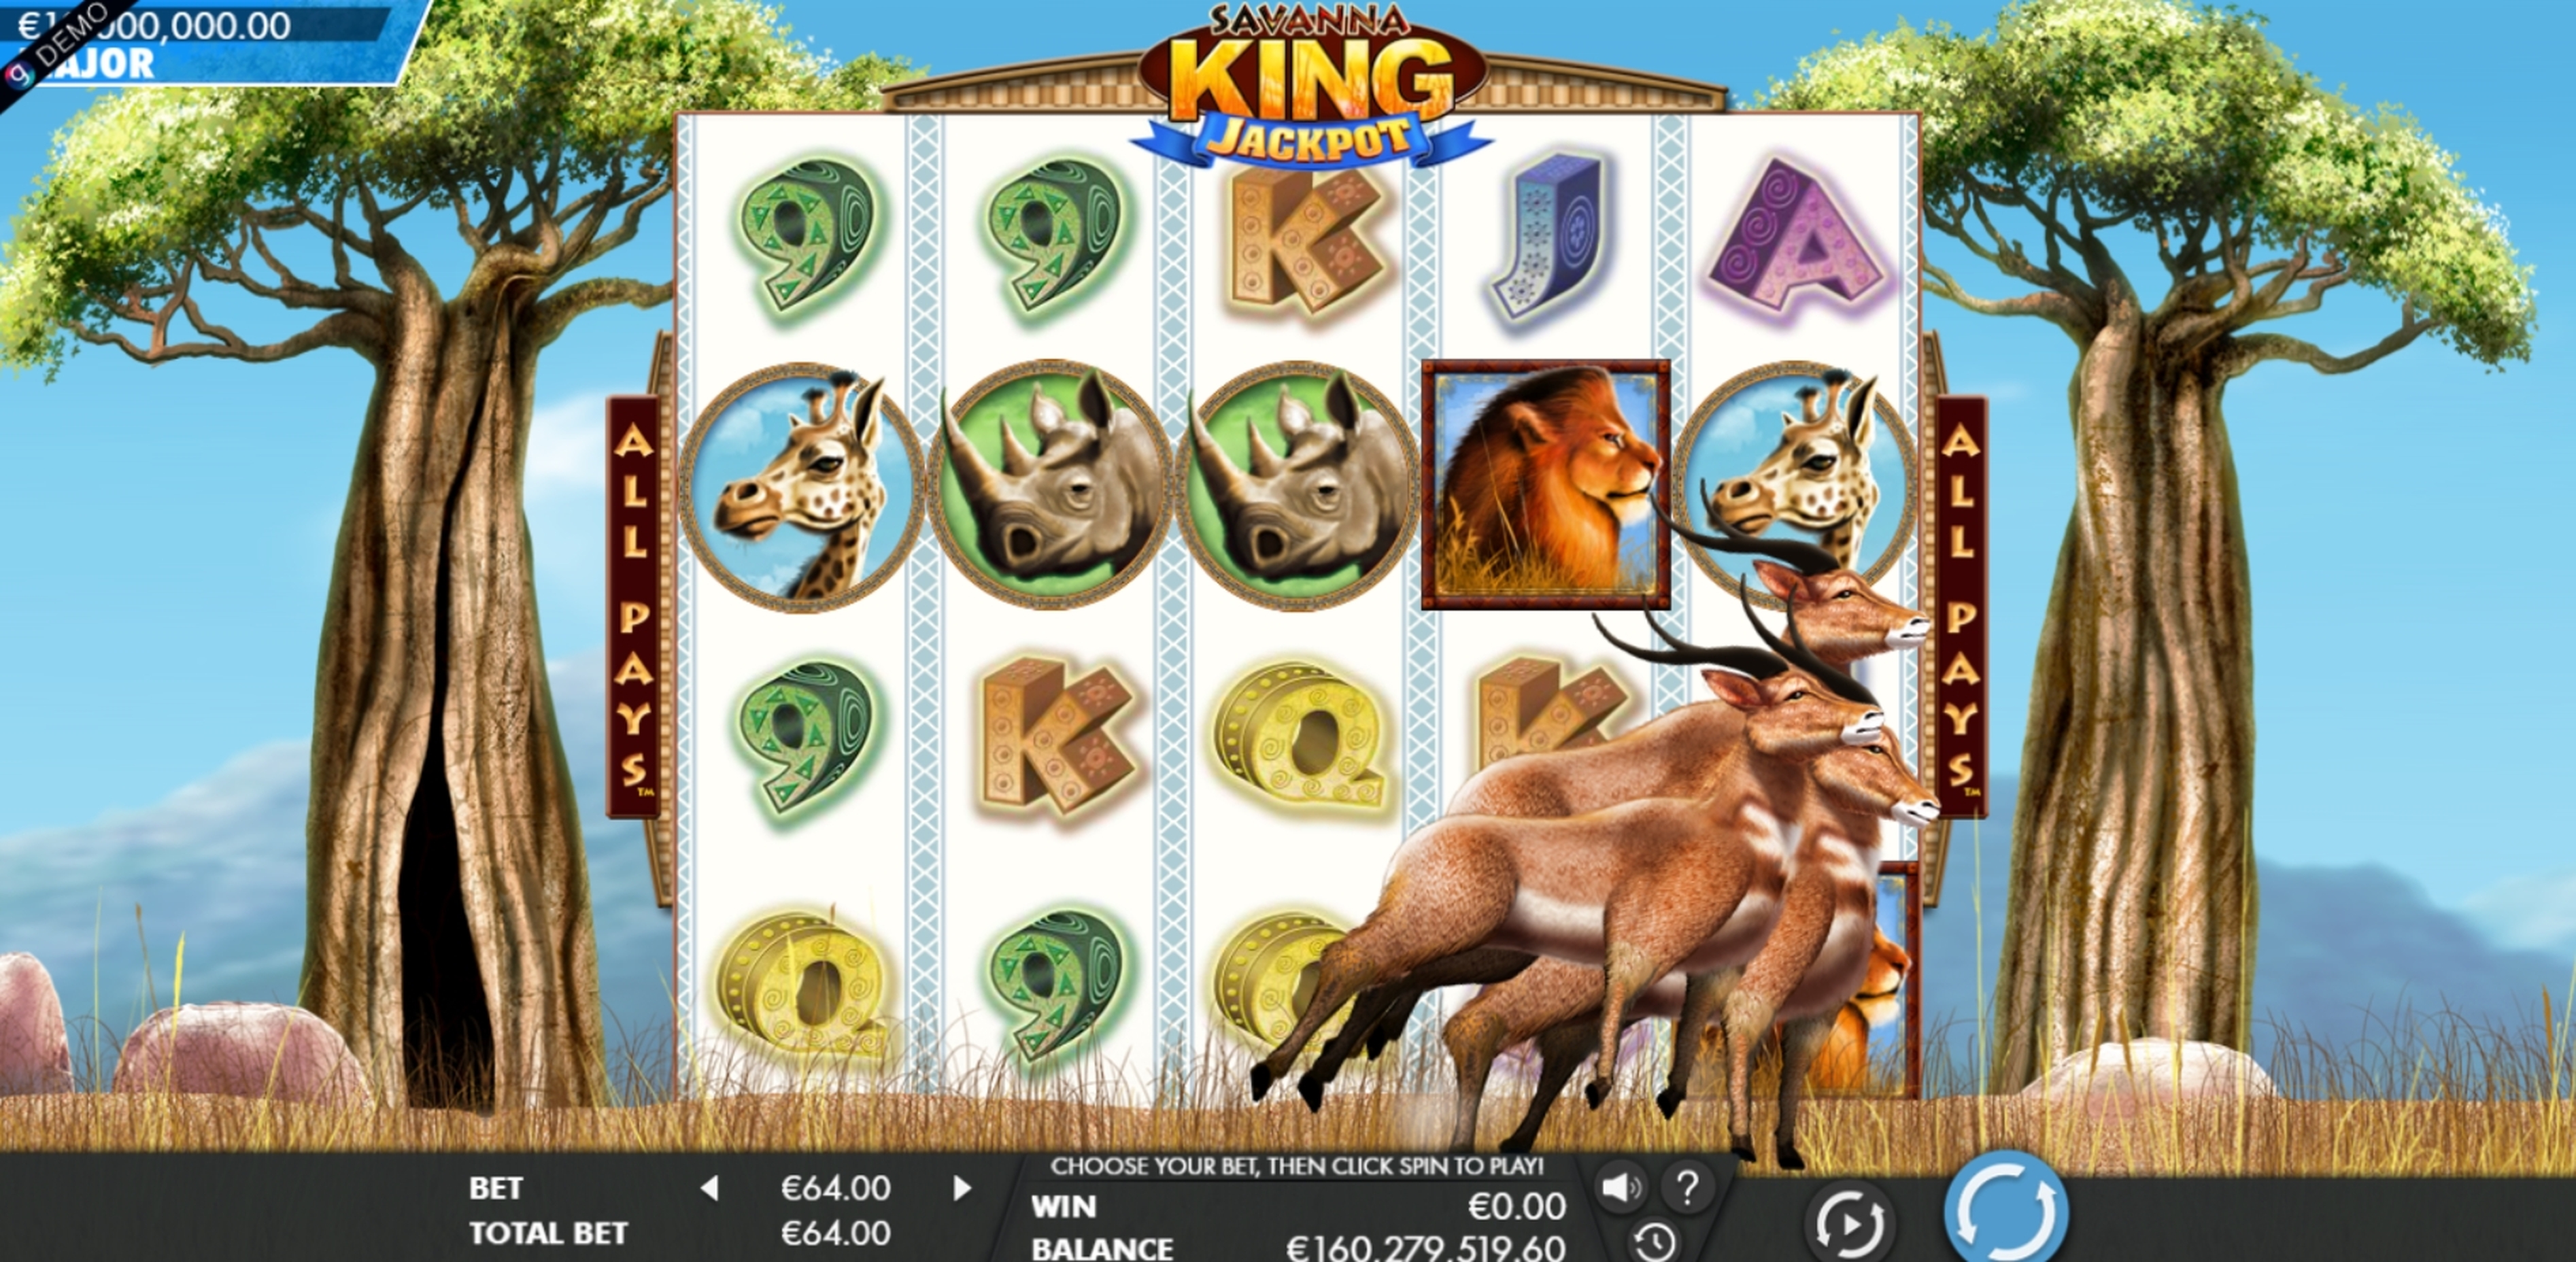 Reels in Savanna King - Jackpot Slot Game by Genesis Gaming